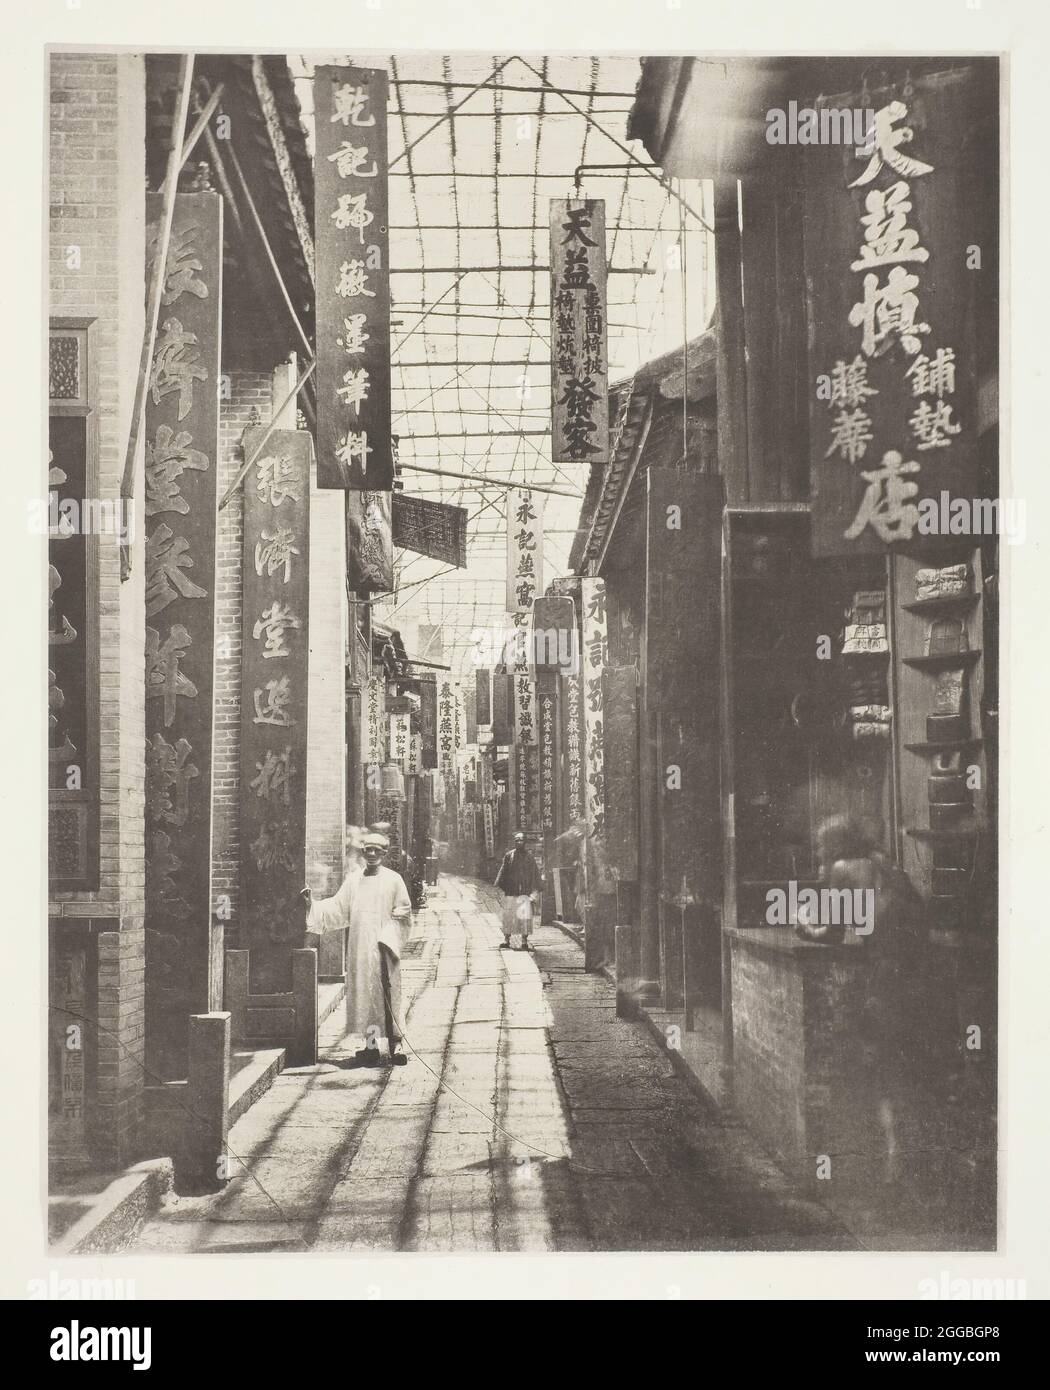 Calle física, Cantón, c. 1868. Una obra hecha de collitotype, pl. xx del álbum «Illustrations of china and its People, volumen i» (1873). Foto de stock